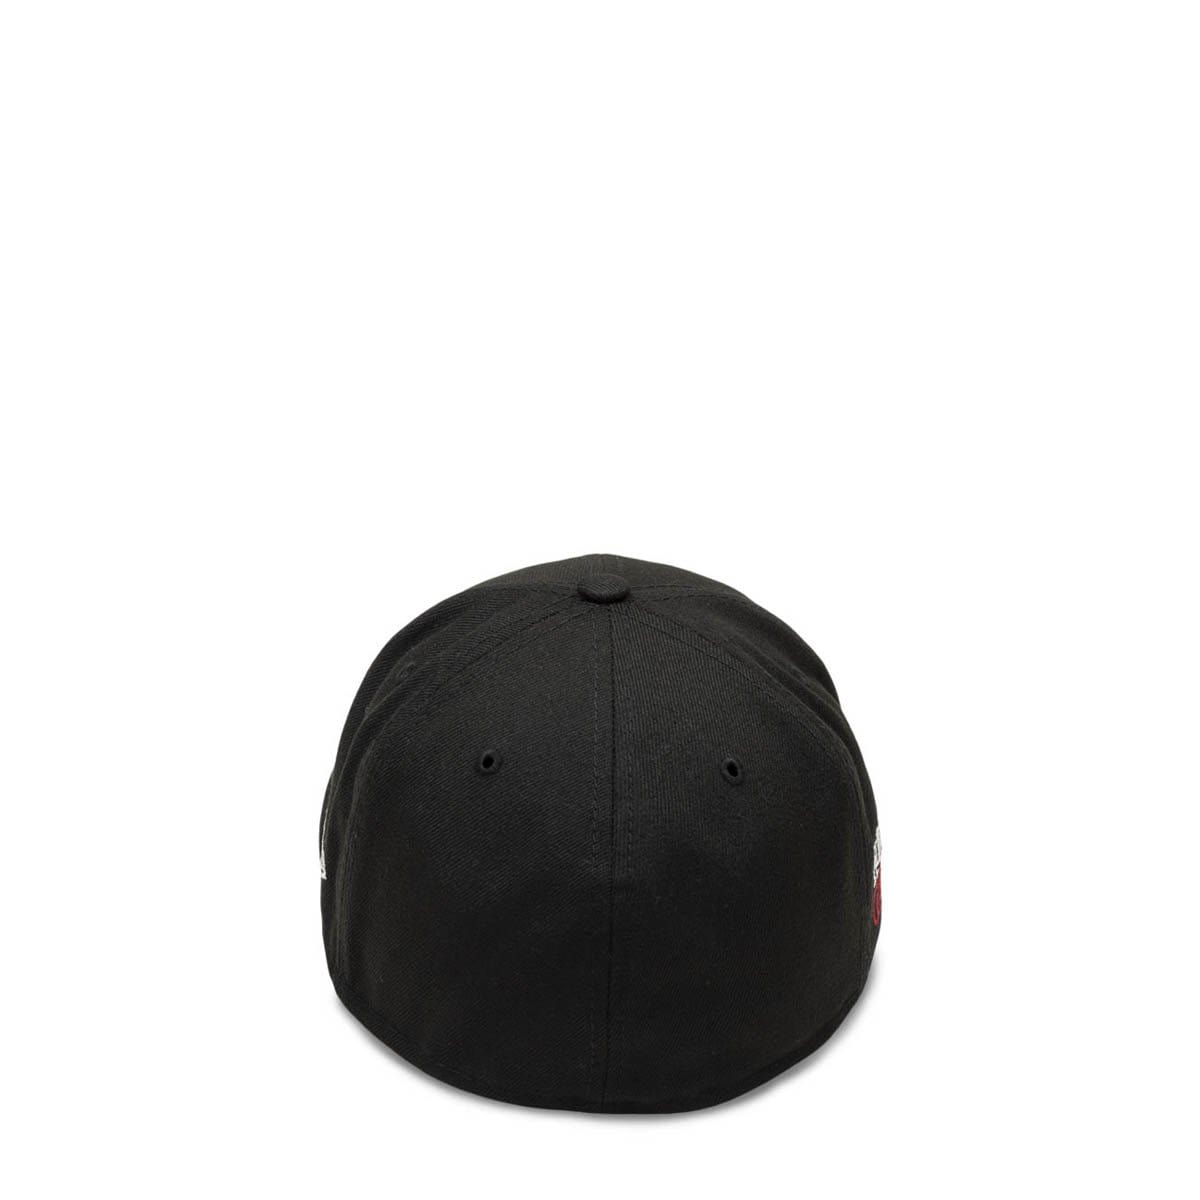 AUTHENTIC NEW ERA CAP Black